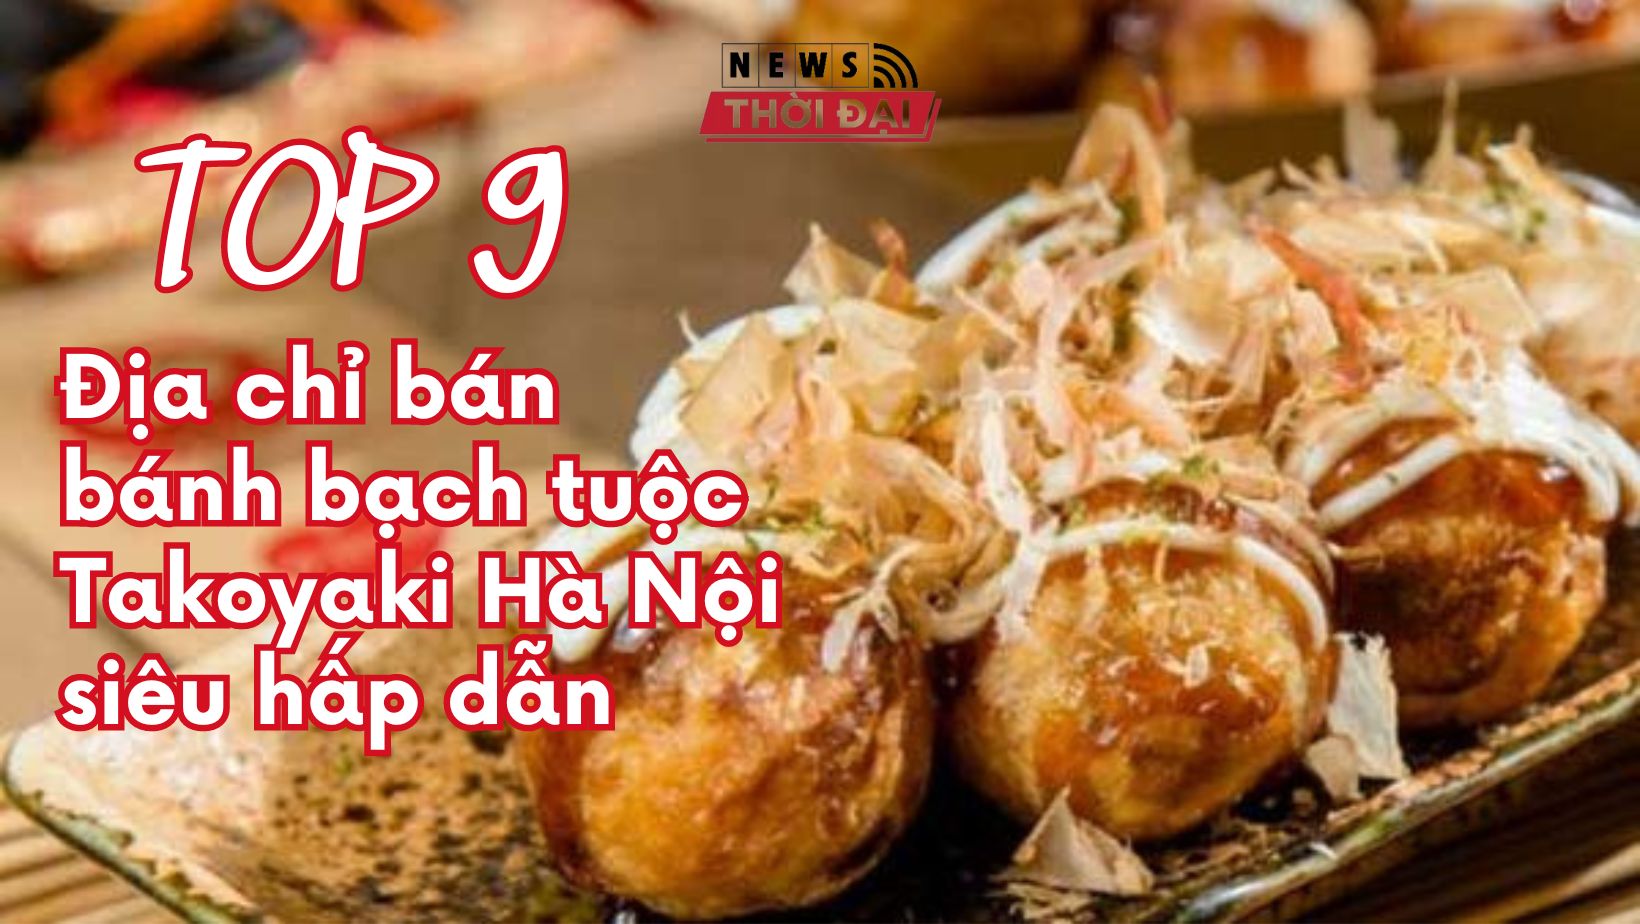 Top 9 Địa chỉ bán bánh bạch tuộc Takoyaki Hà Nội siêu hấp dẫn